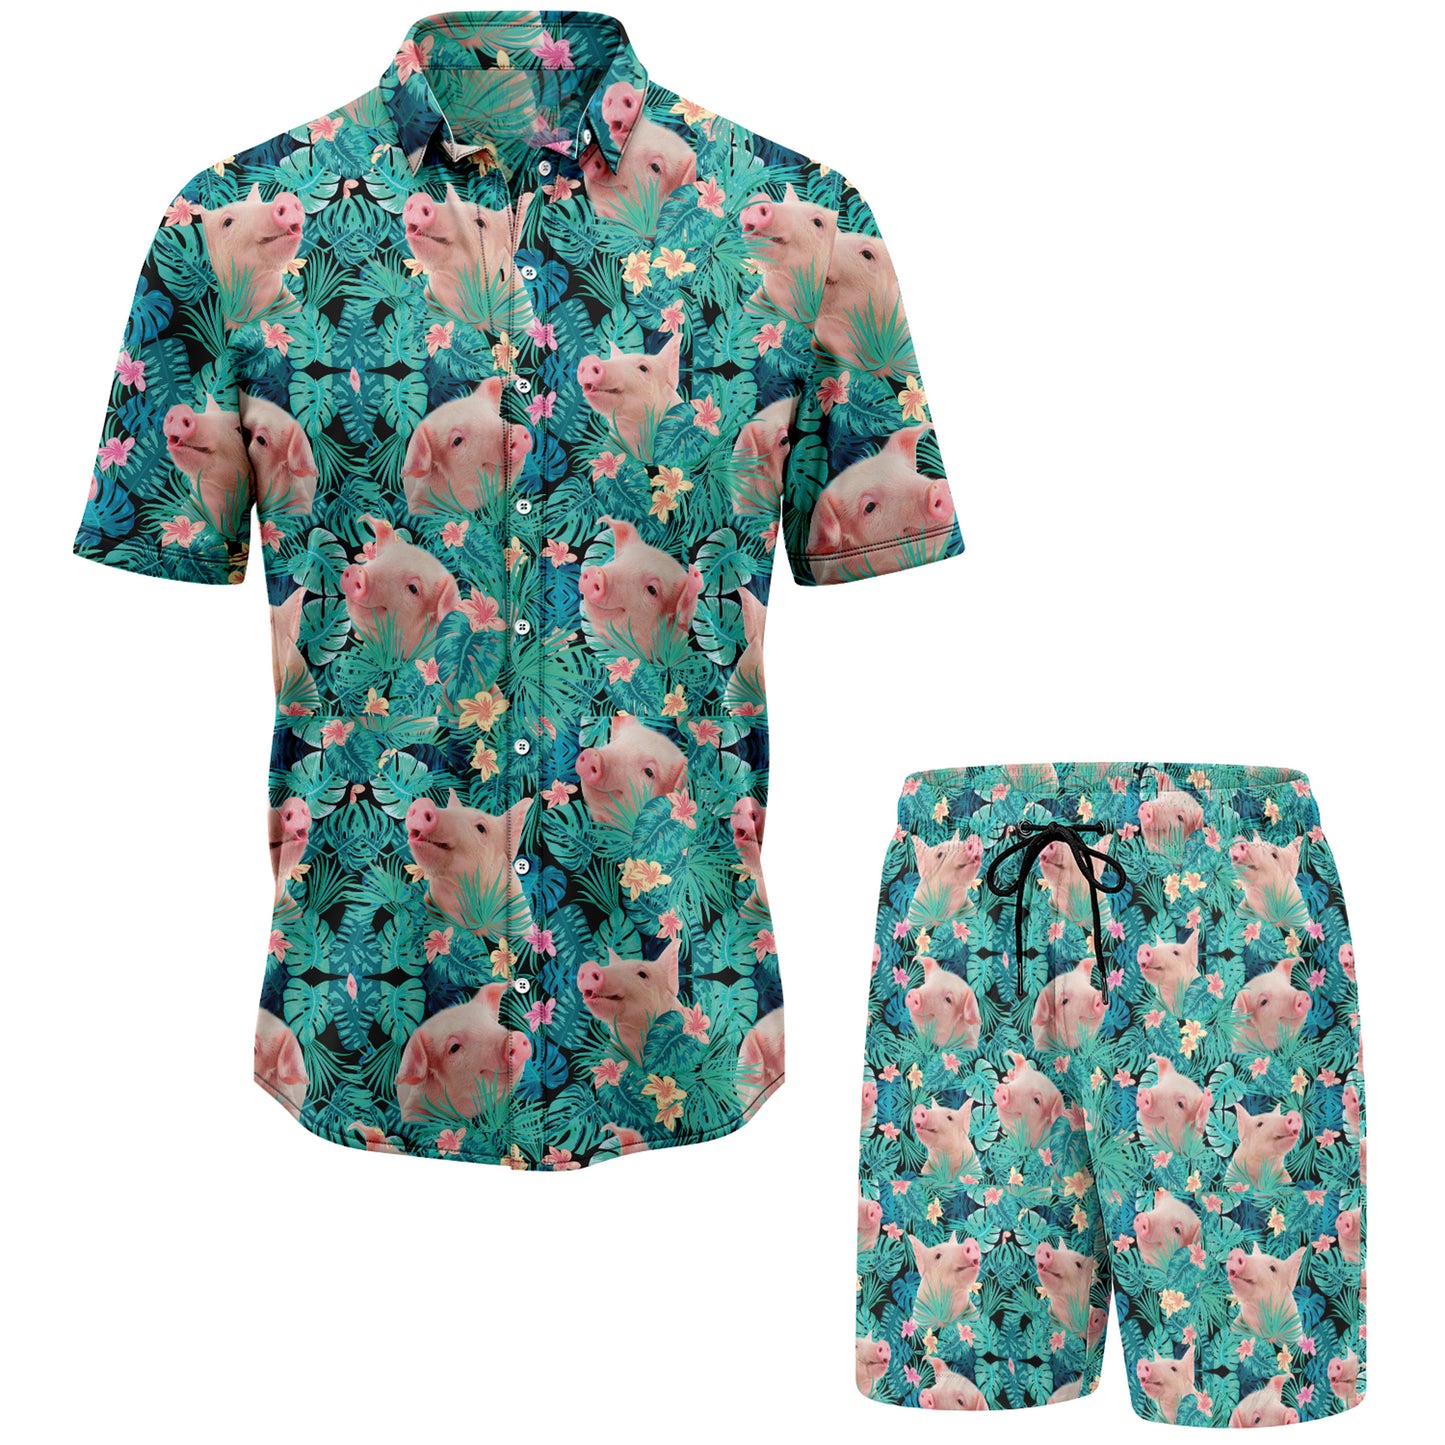 Pig And Tropical Plants Hawaiian Shirt And Shorts